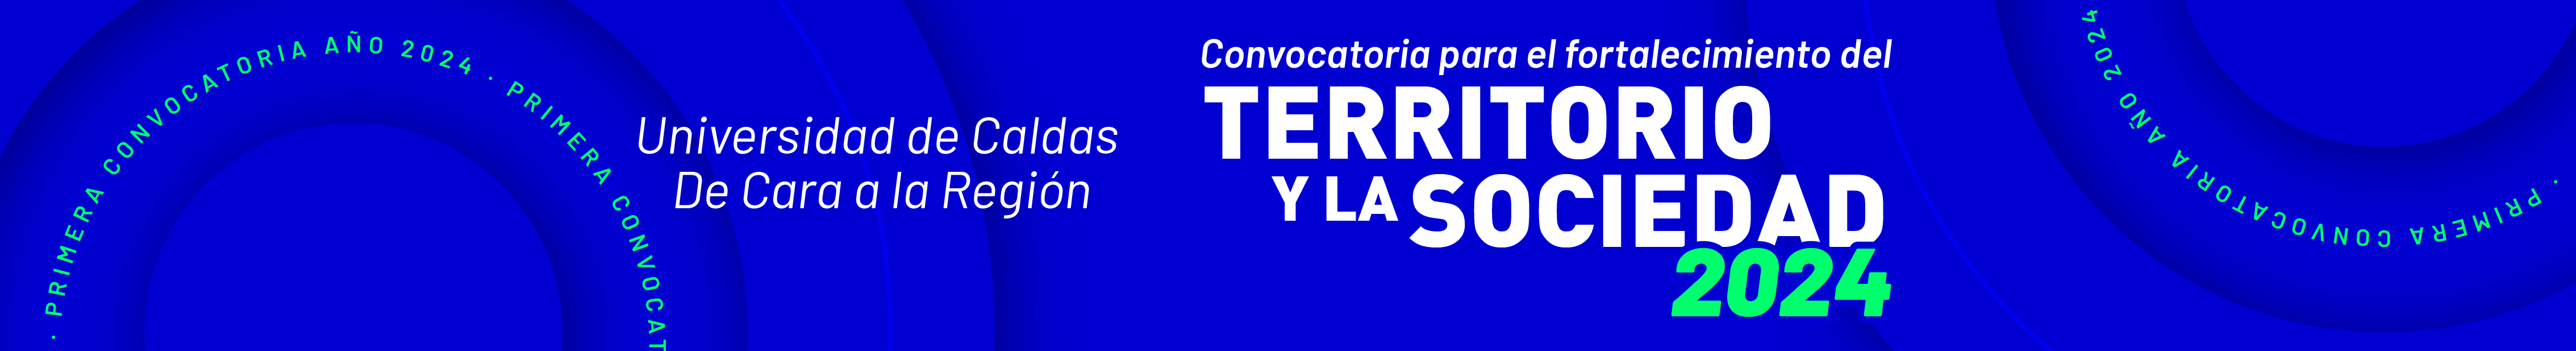 Imagen fondo azul y círculos con texto que dice "Primera Convocatoria Año 2023" Convocatoria Para el Fortalecimiento de Territorio y la Sociedad 2023.